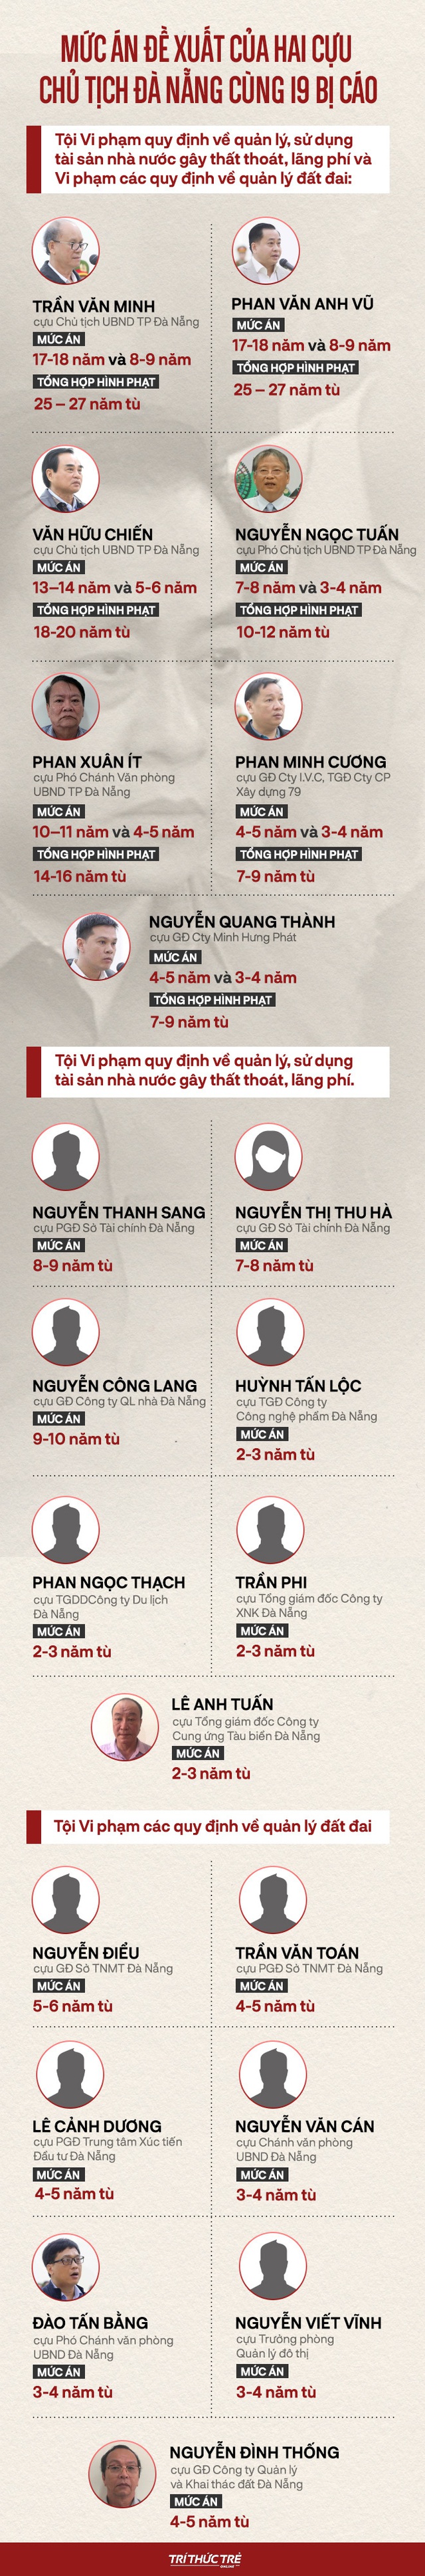 Tuyên án 2 cựu Chủ tịch Đà Nẵng: HĐXX nhận định, bị cáo Phan Văn Anh Vũ có quyền lực rất lớn - Ảnh 2.